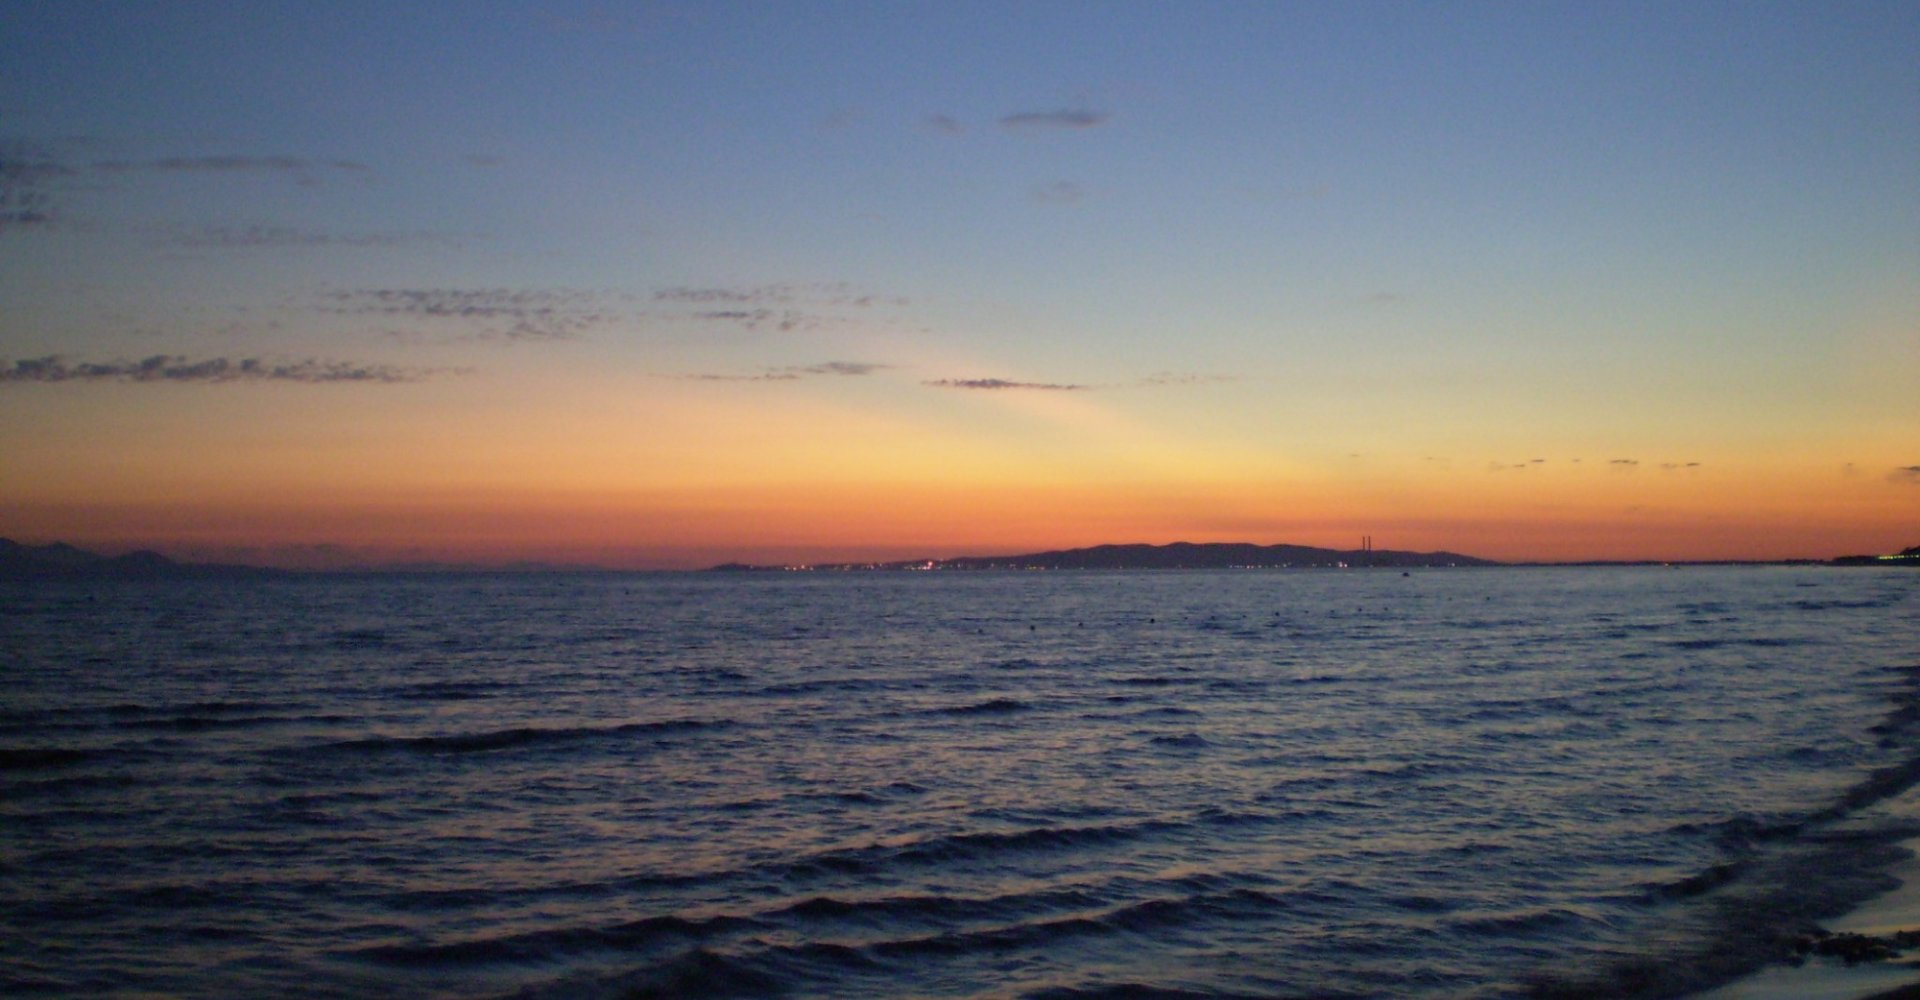 Spiaggia di Pratoranieri al tramonto